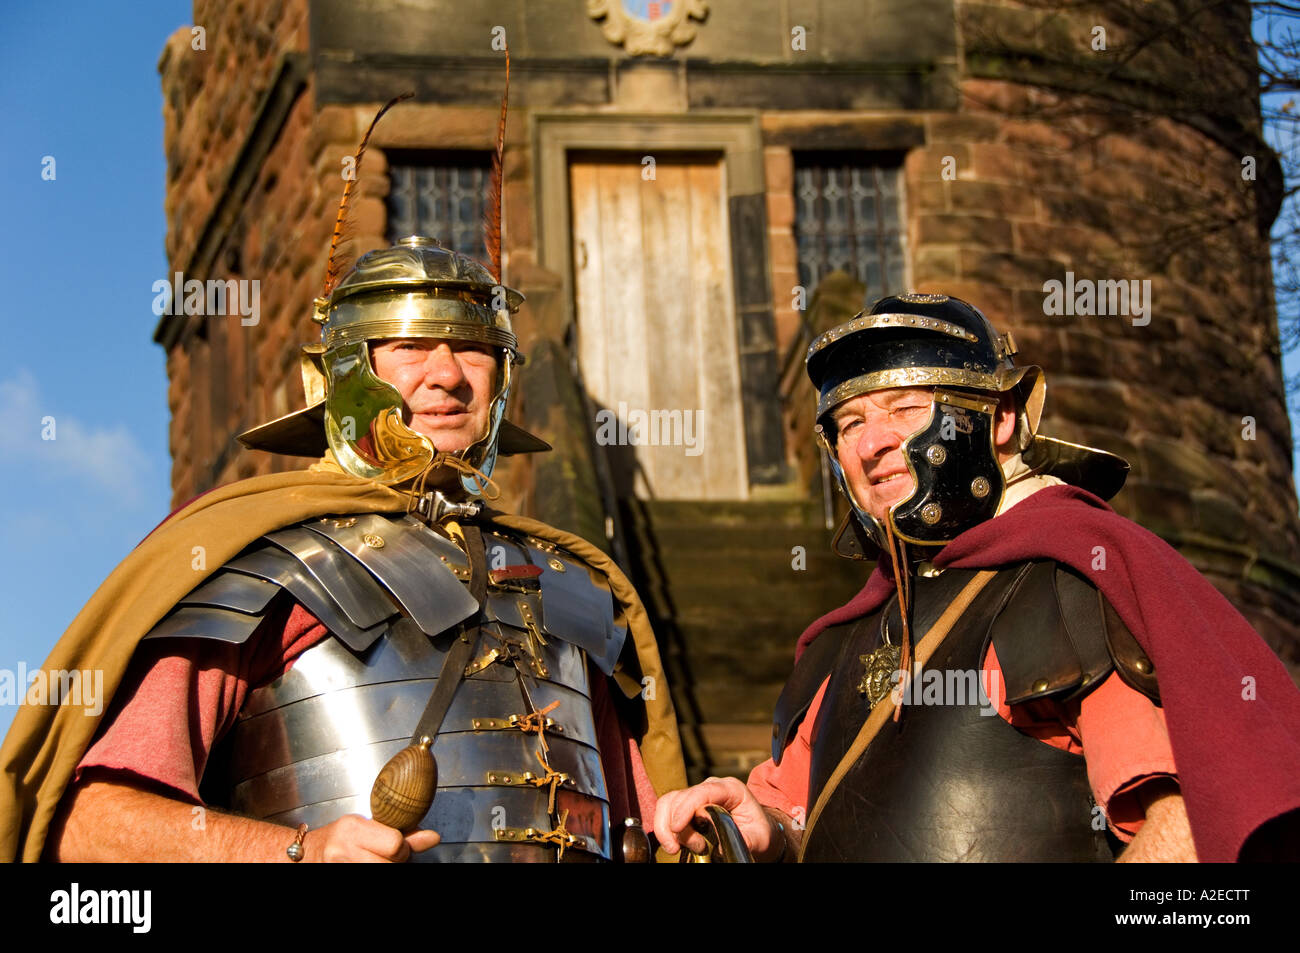 Légionnaires romains en face du roi Charles, Tour des Remparts, Chester, Cheshire, Angleterre, Royaume-Uni Banque D'Images